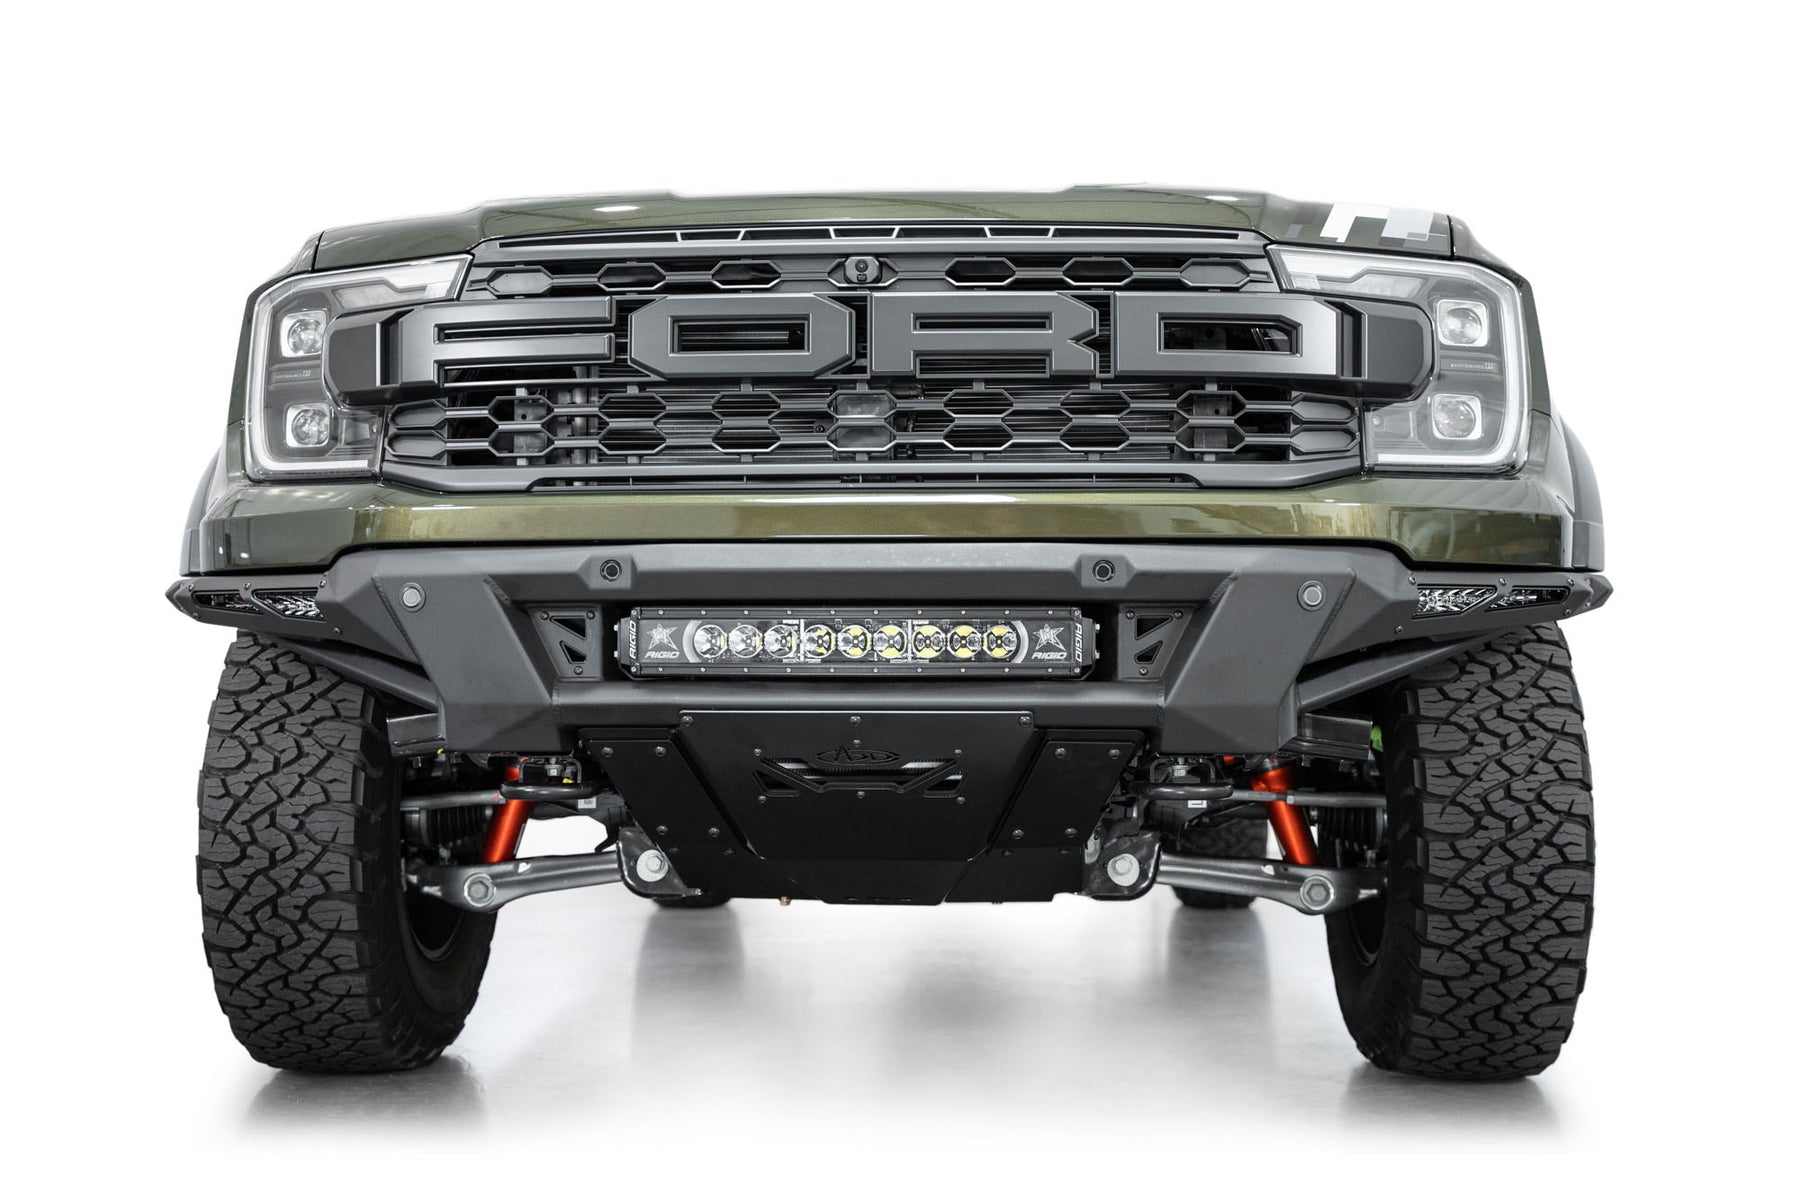 Ford-Ranger-Raptor-Phantom-Front-Bumper-Installed-6_1800x1800.jpg